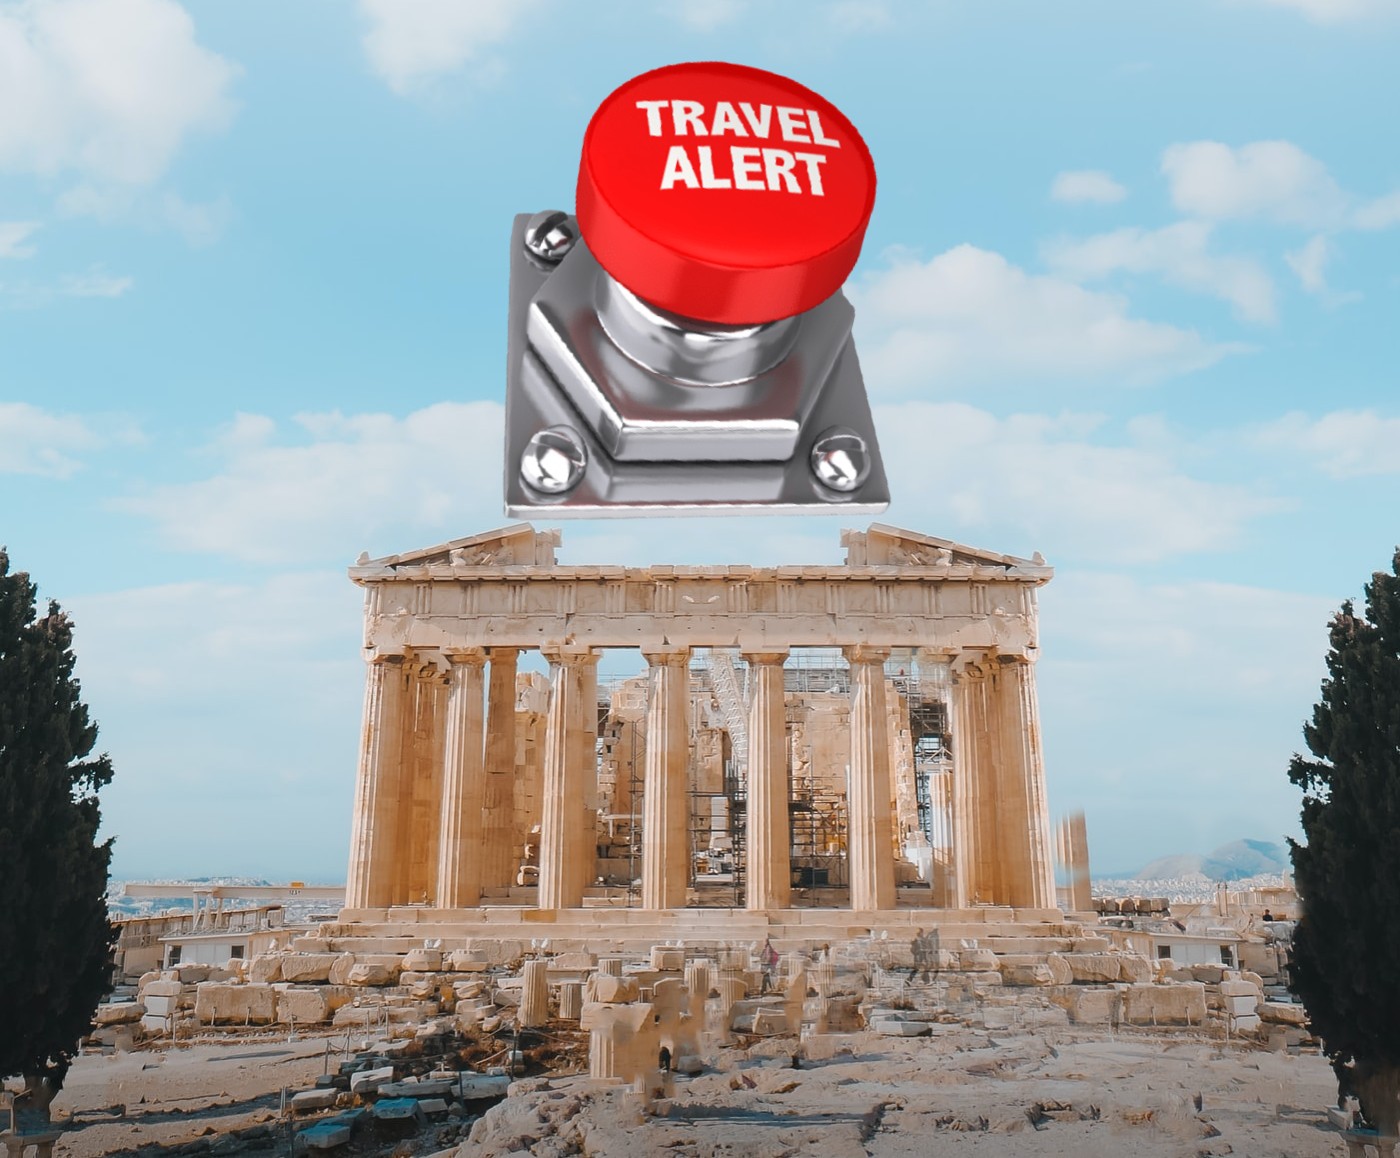 Grecia botón de alerta, 16 nuevos países